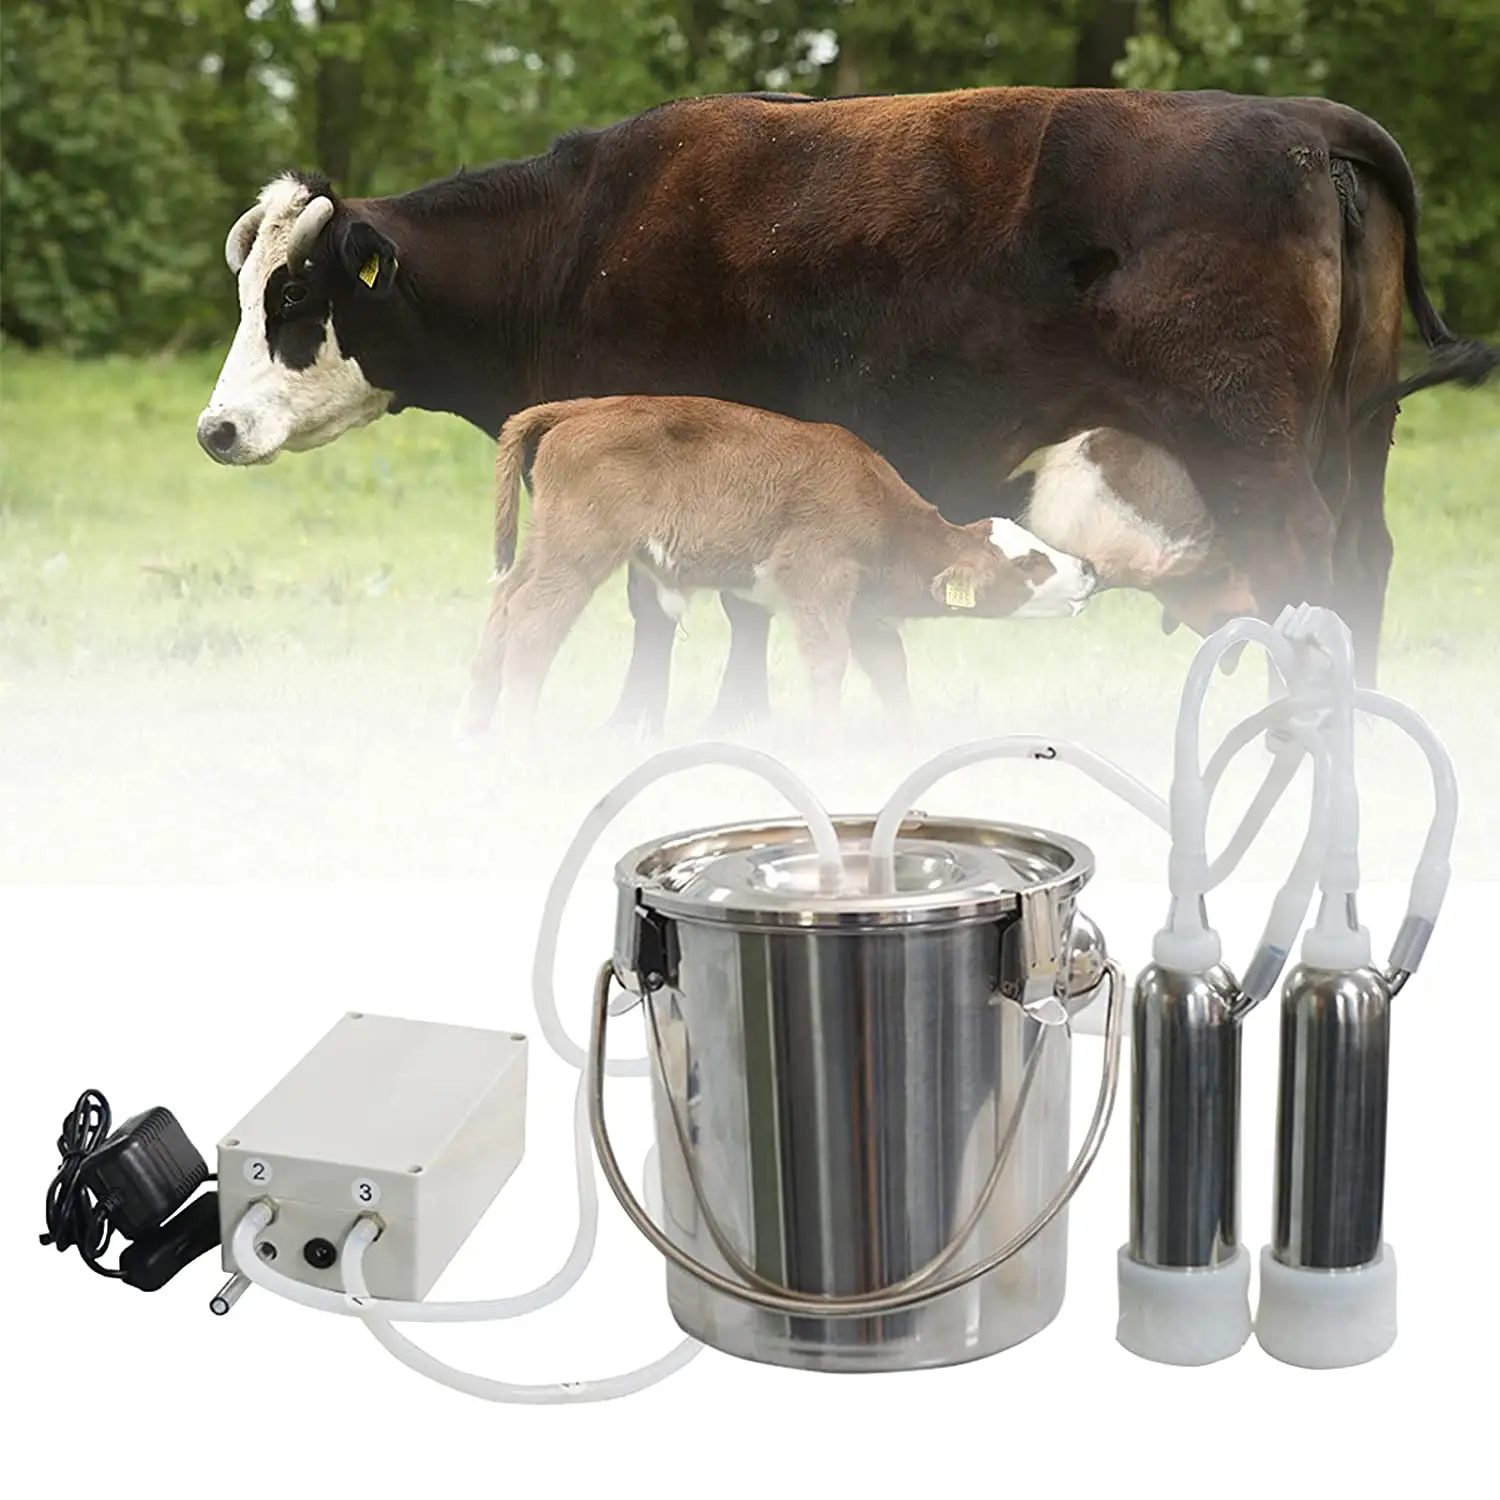 الكهربائية آلة الحلب للأبقار نبض مضخة تفريغ الحالب مع دلو من الفولاذ المقاوِم للصدأ كامل وظيفة إيقاف السيارات (البقر 7L)